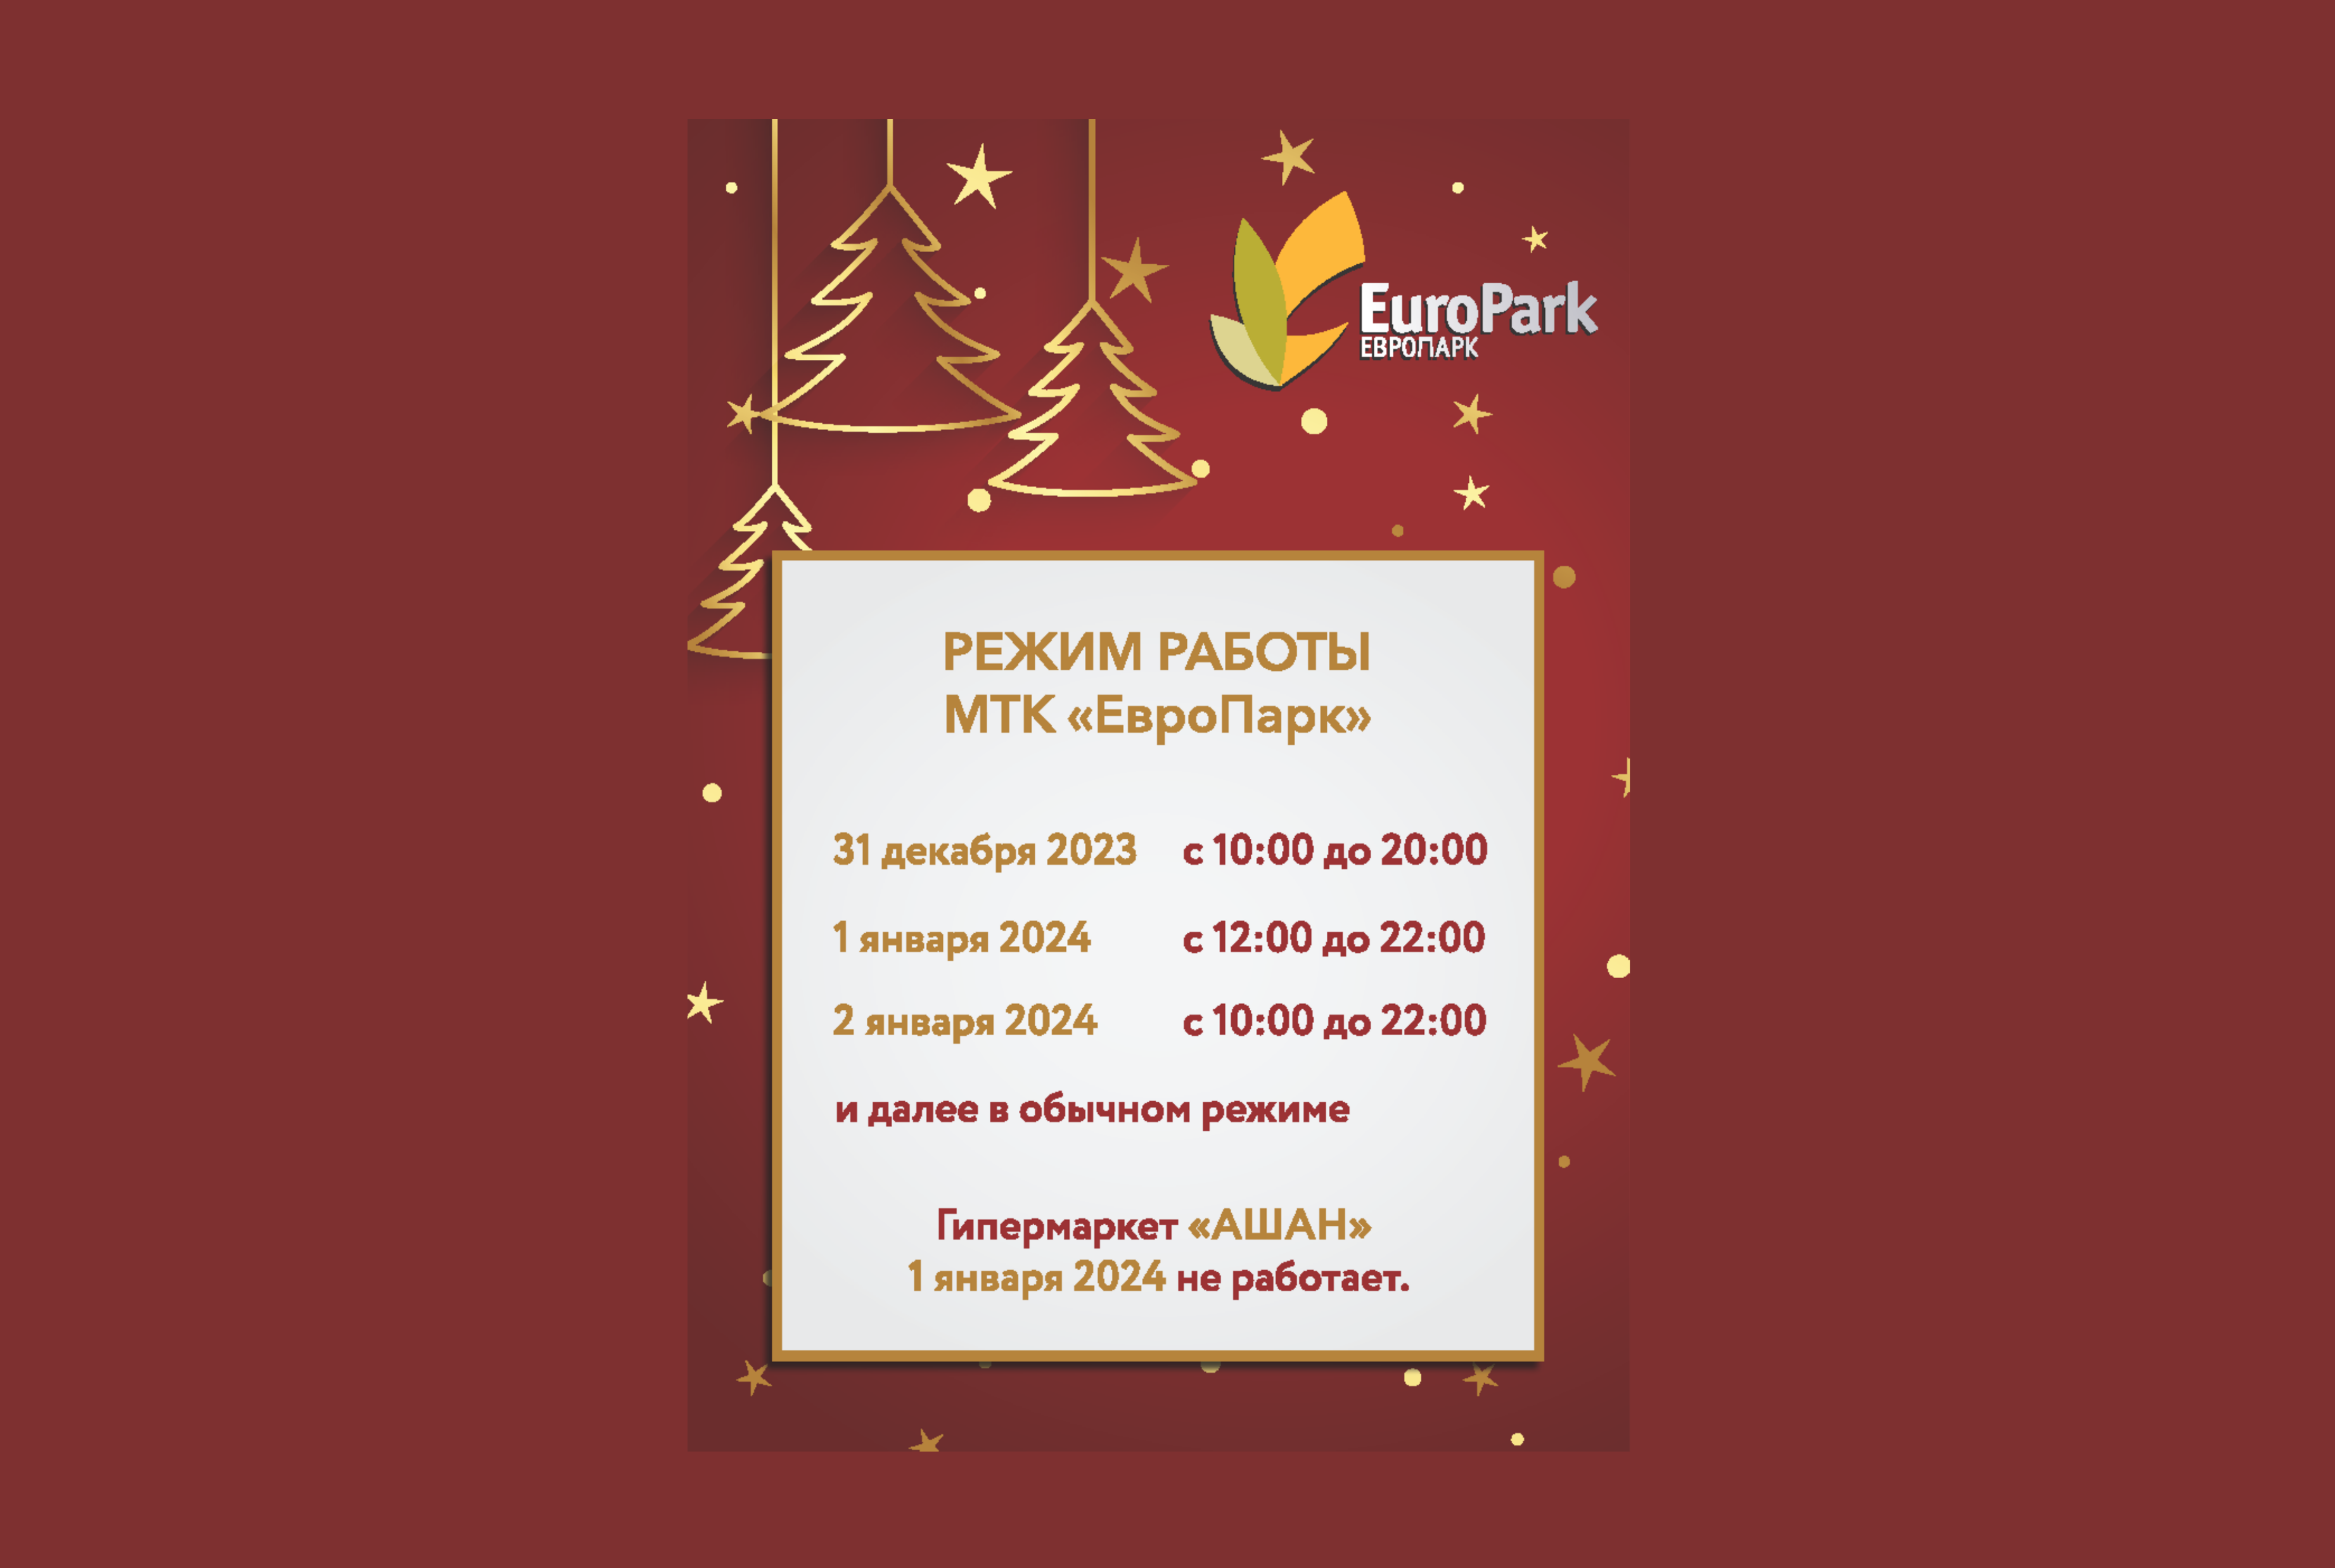 Режим работы МТК “ЕвроПарк” в праздничные дни!